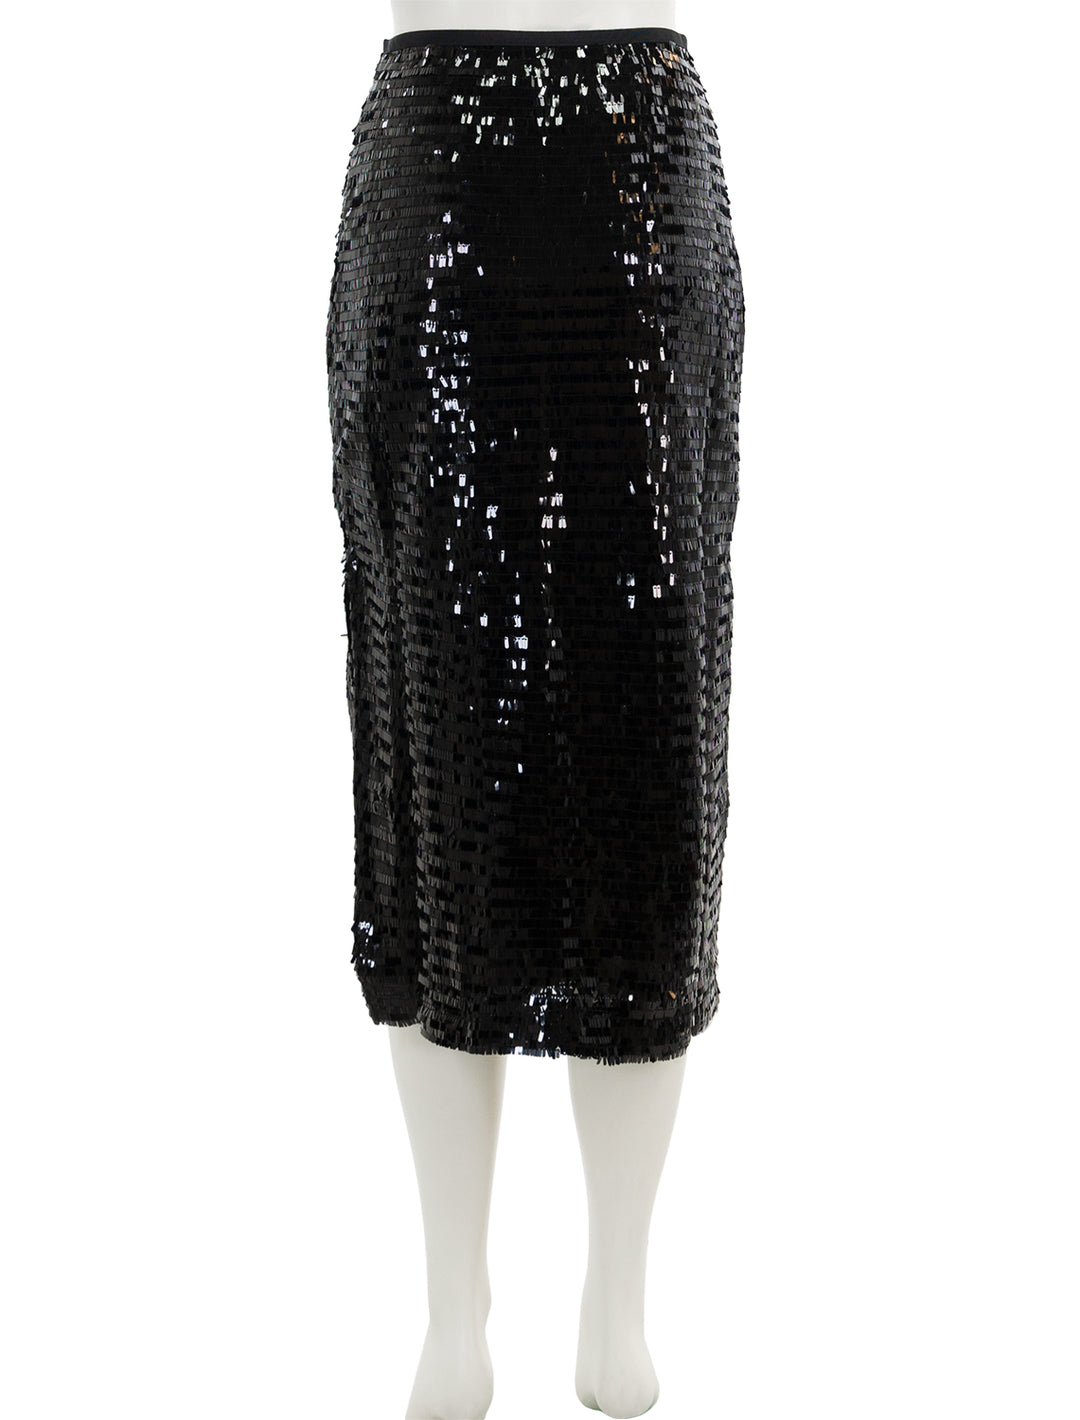 Back view of Steve Madden's dinah midi skirt in black sequins.